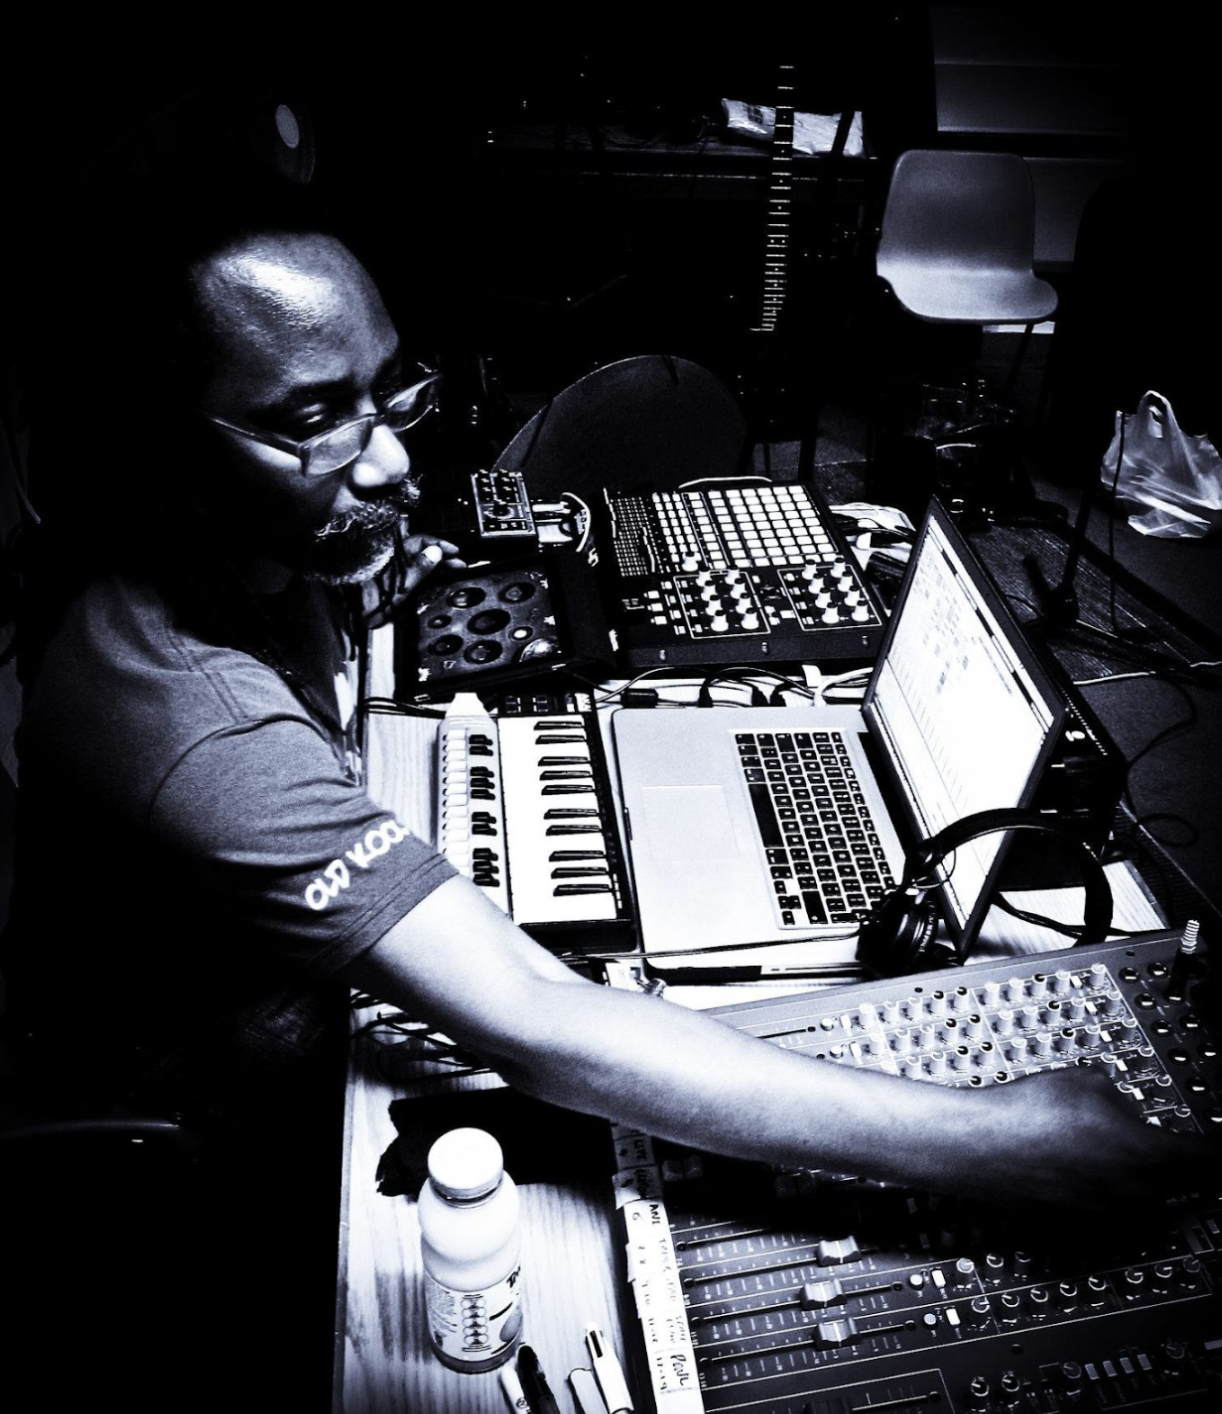 Profile image of Trevor Mathison on a sound desk